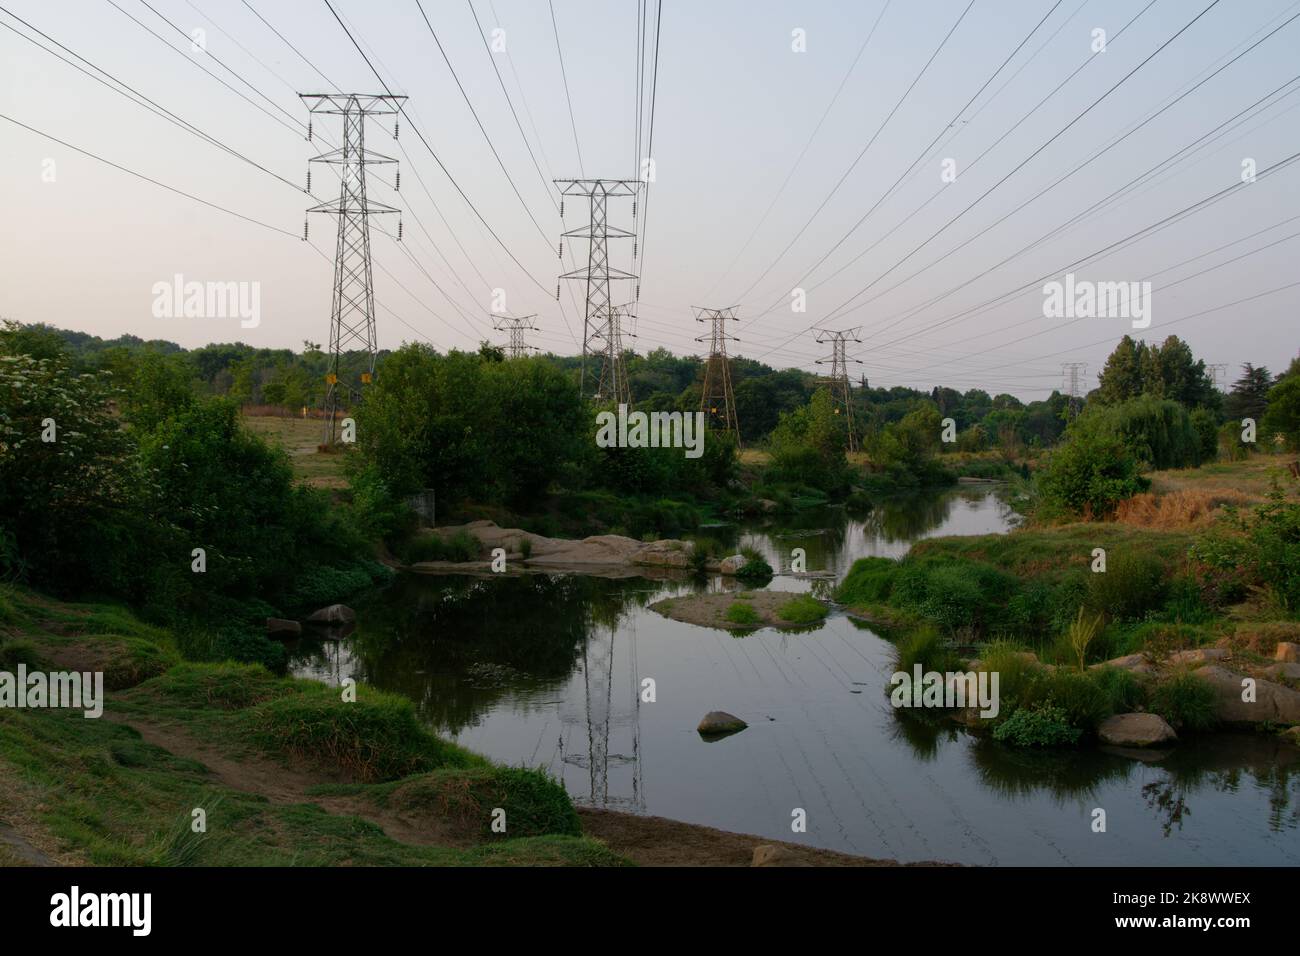 Una piacevole scena fluviale ombreggiata da grandi piloni elettrici e linee elettriche aeree. Foto Stock